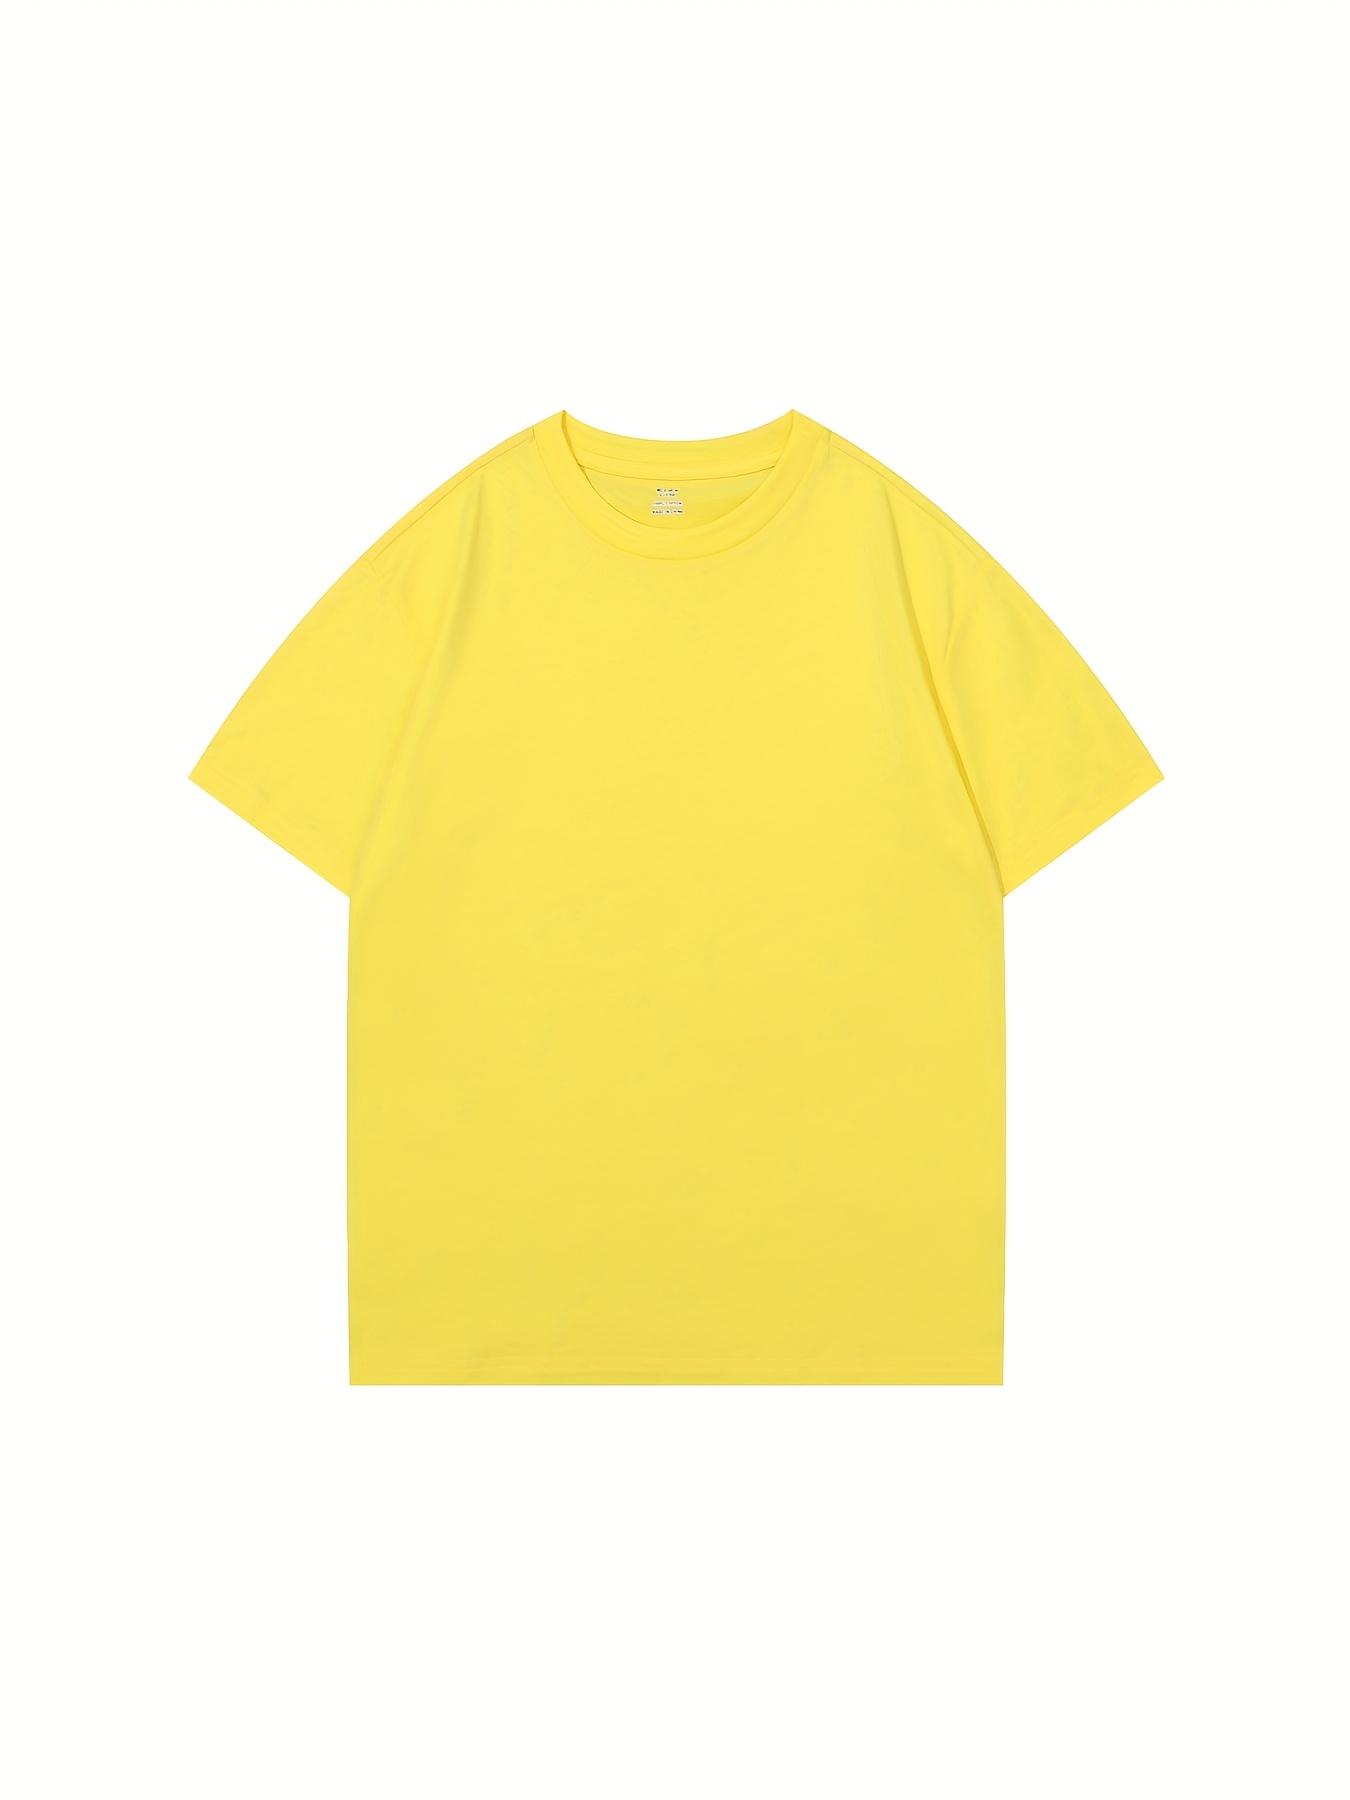 Las mejores ofertas en Niñas Amarillo 10-12 tamaño Tops, camisas y camisetas  para Niñas